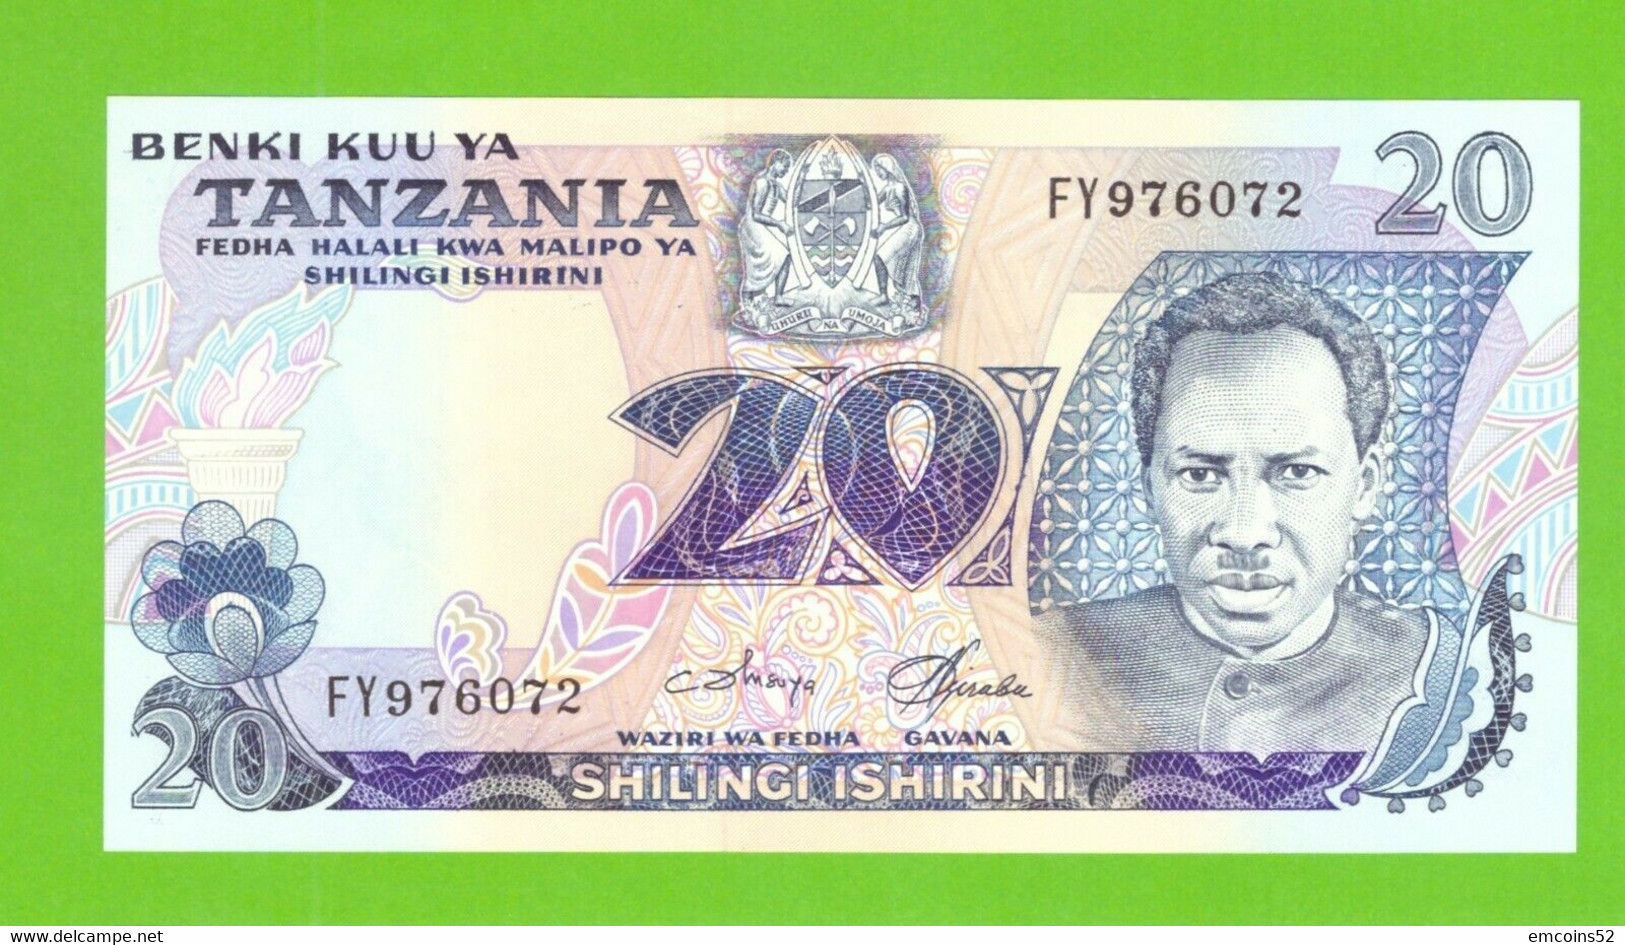 TANZANIA 20 SHILLINGS 1978  P-7c  UNC - Tanzania